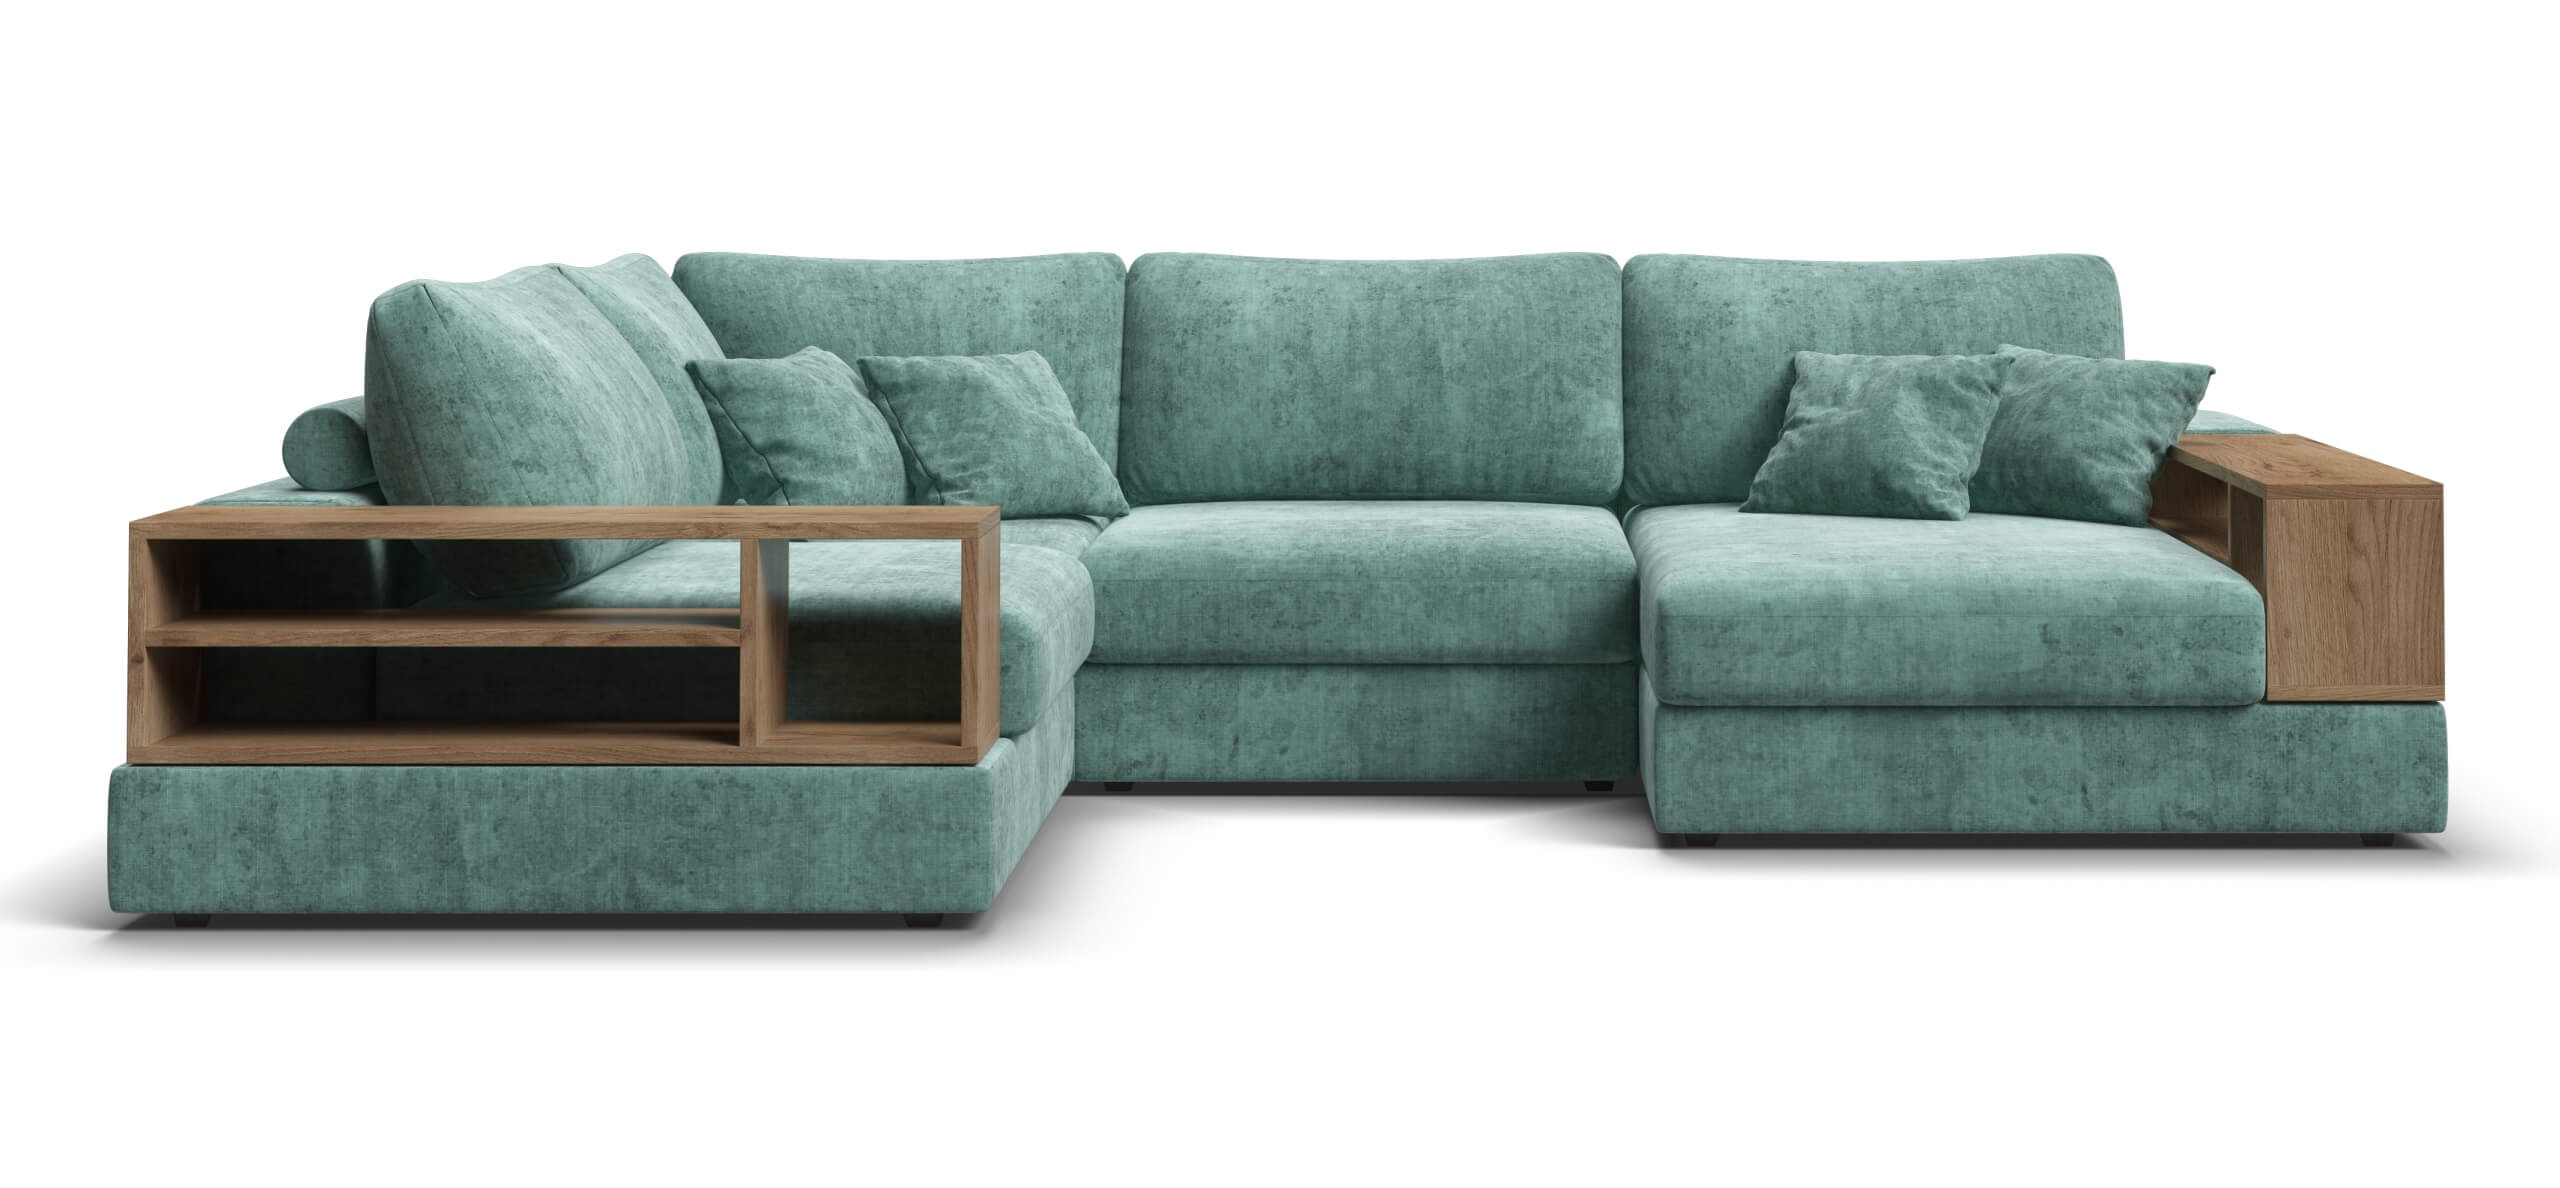 П-образный диван-кровать boss modool шенилл gloss минт